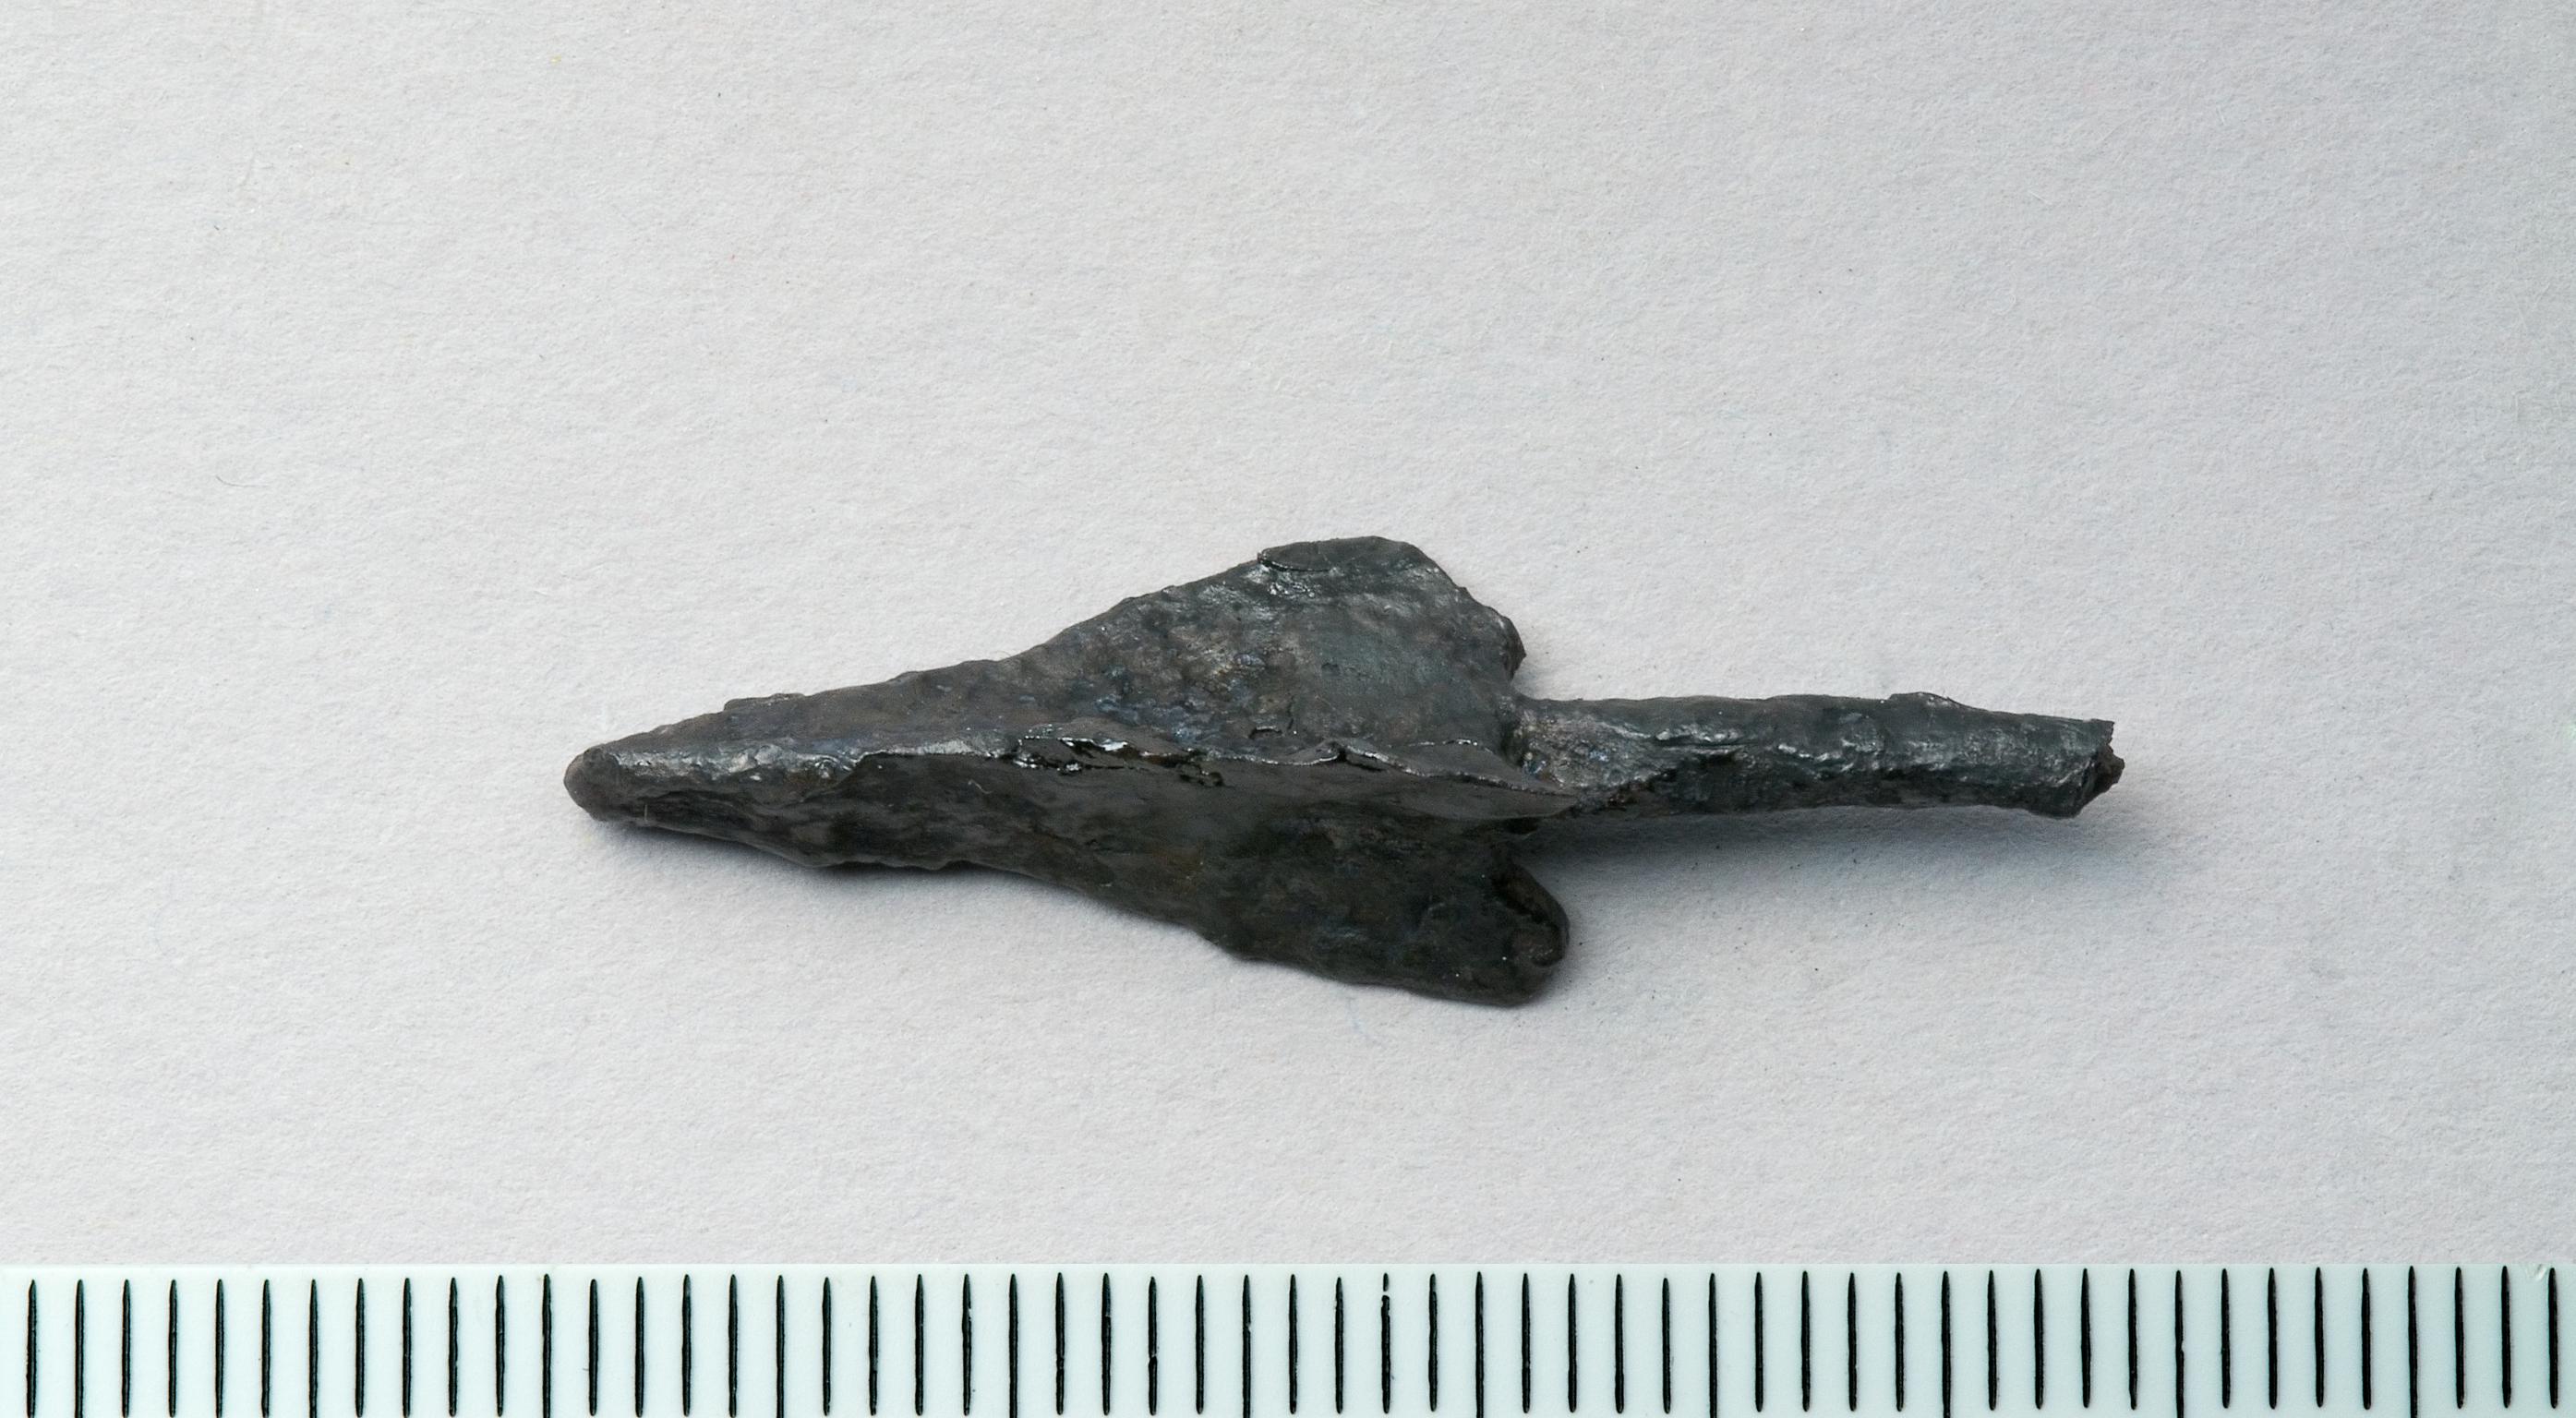 Iron Age / Roman iron arrowhead